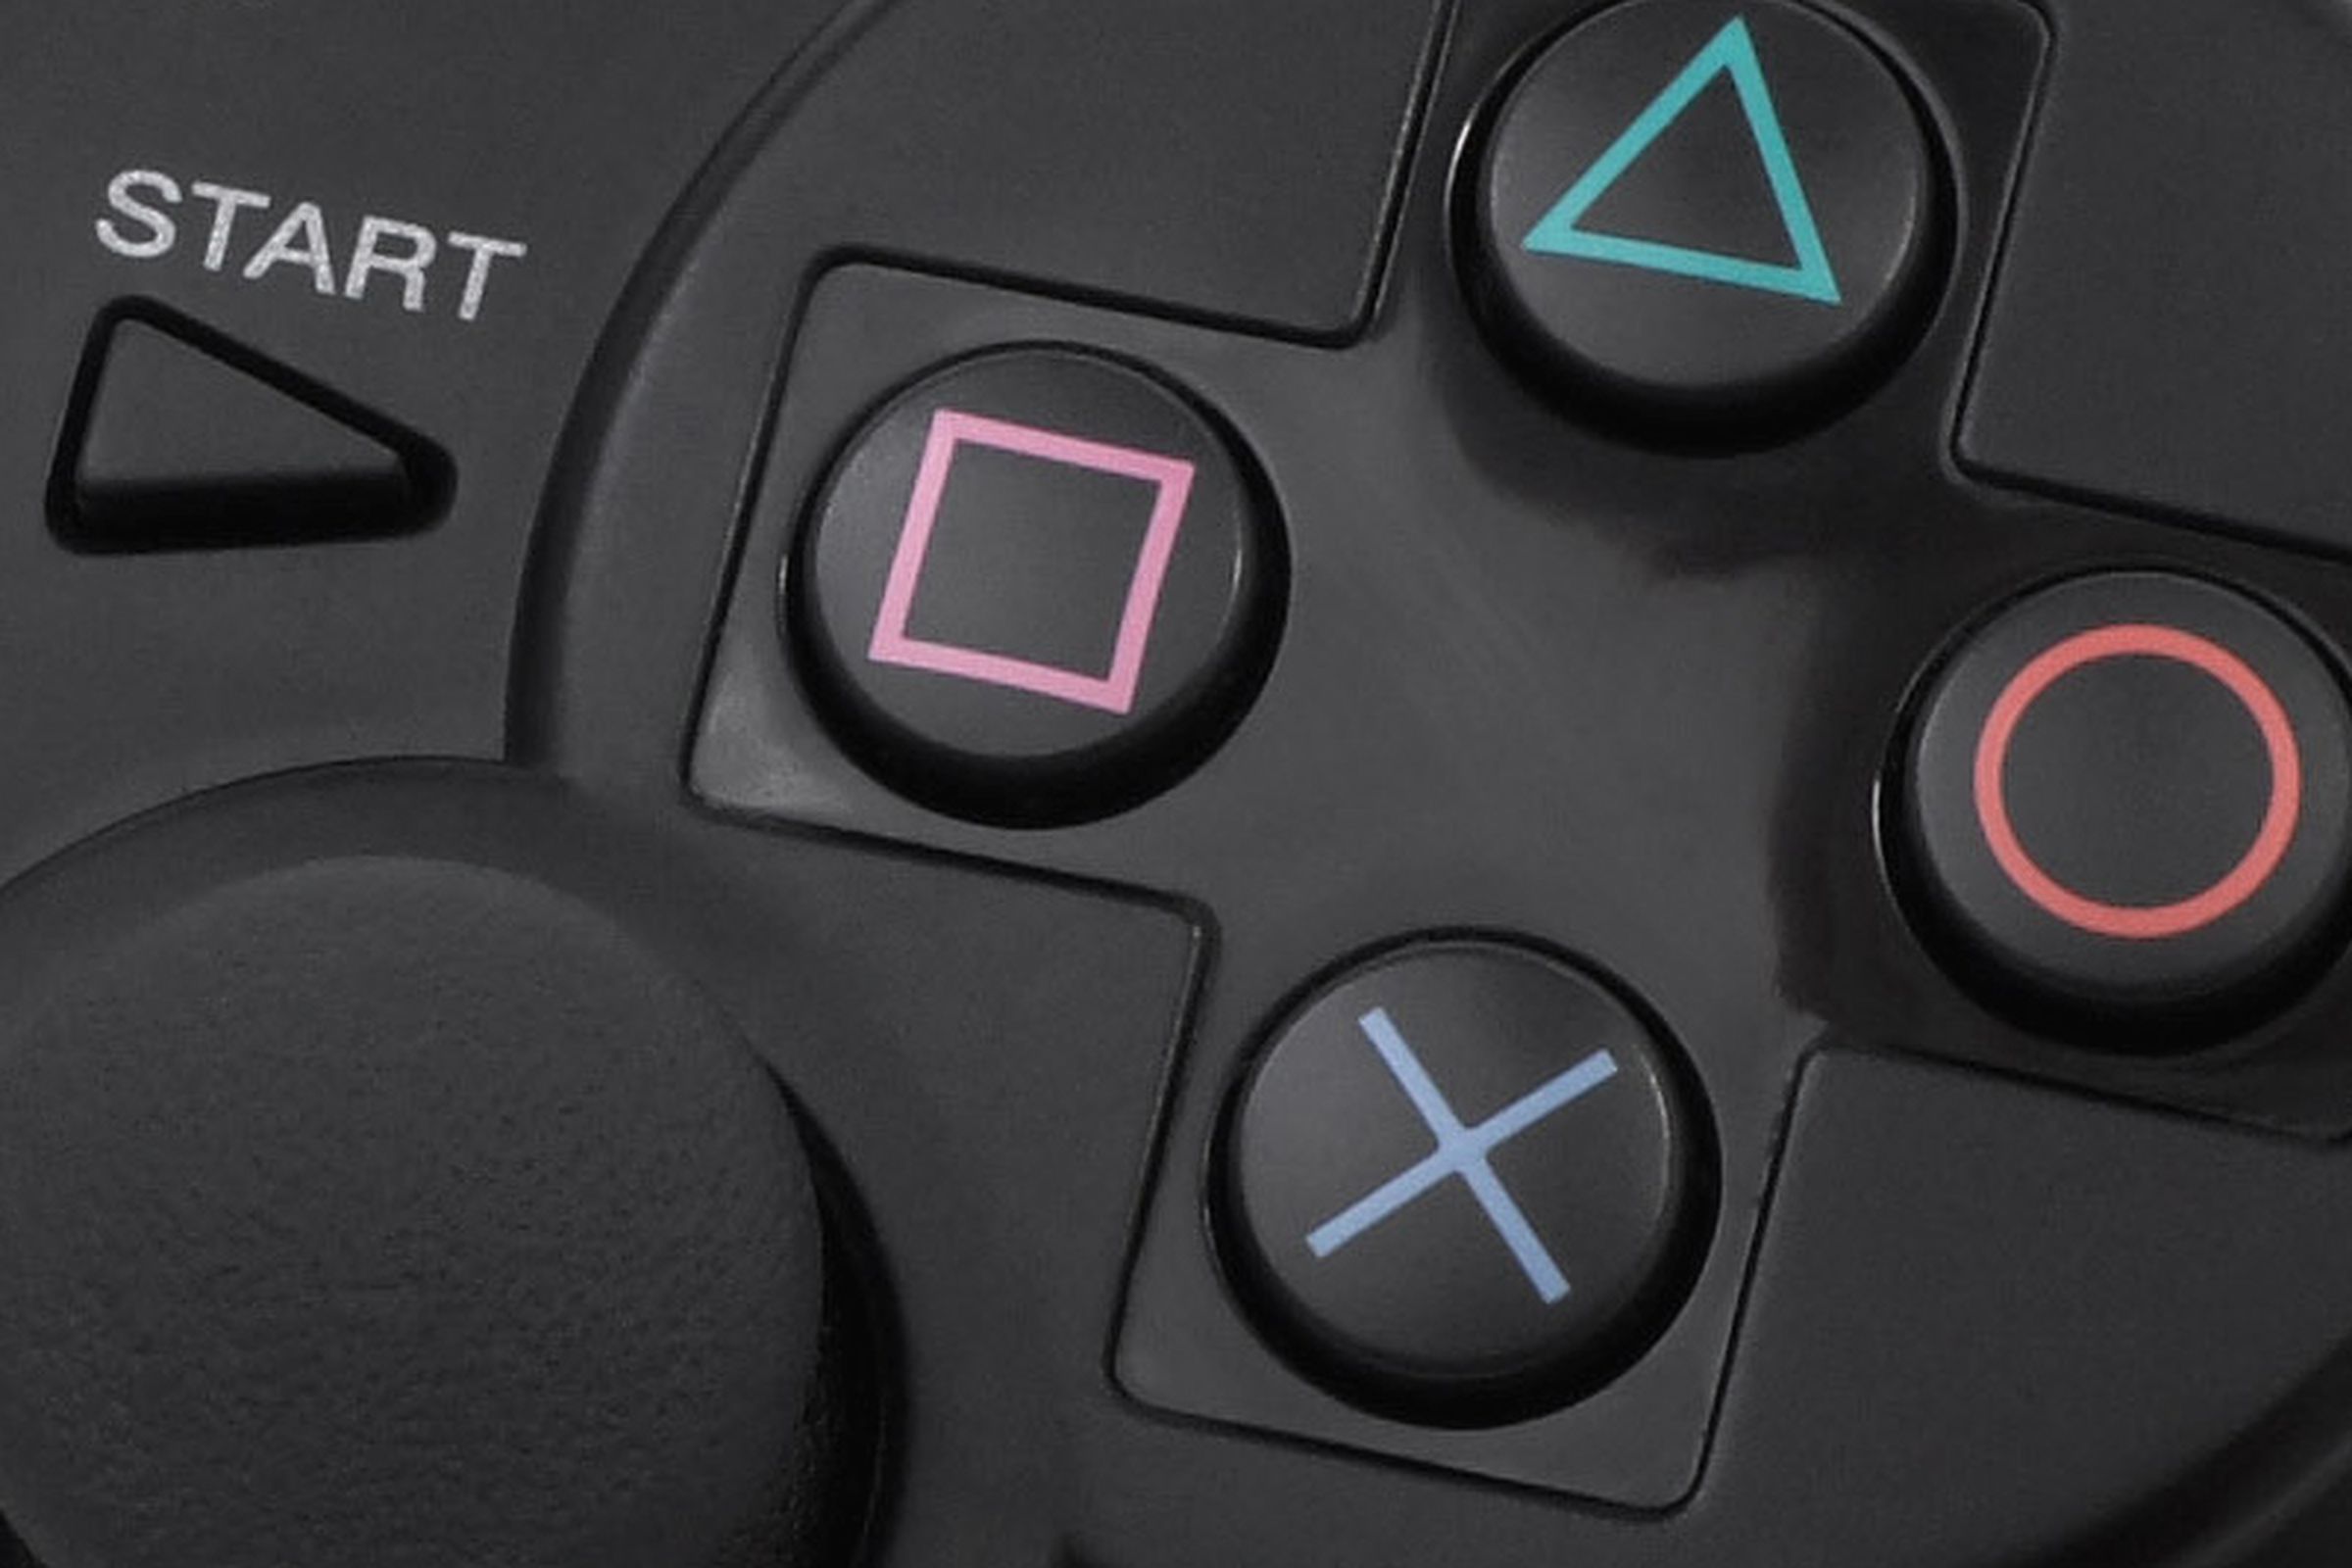 PS3 dualshock controller close-up